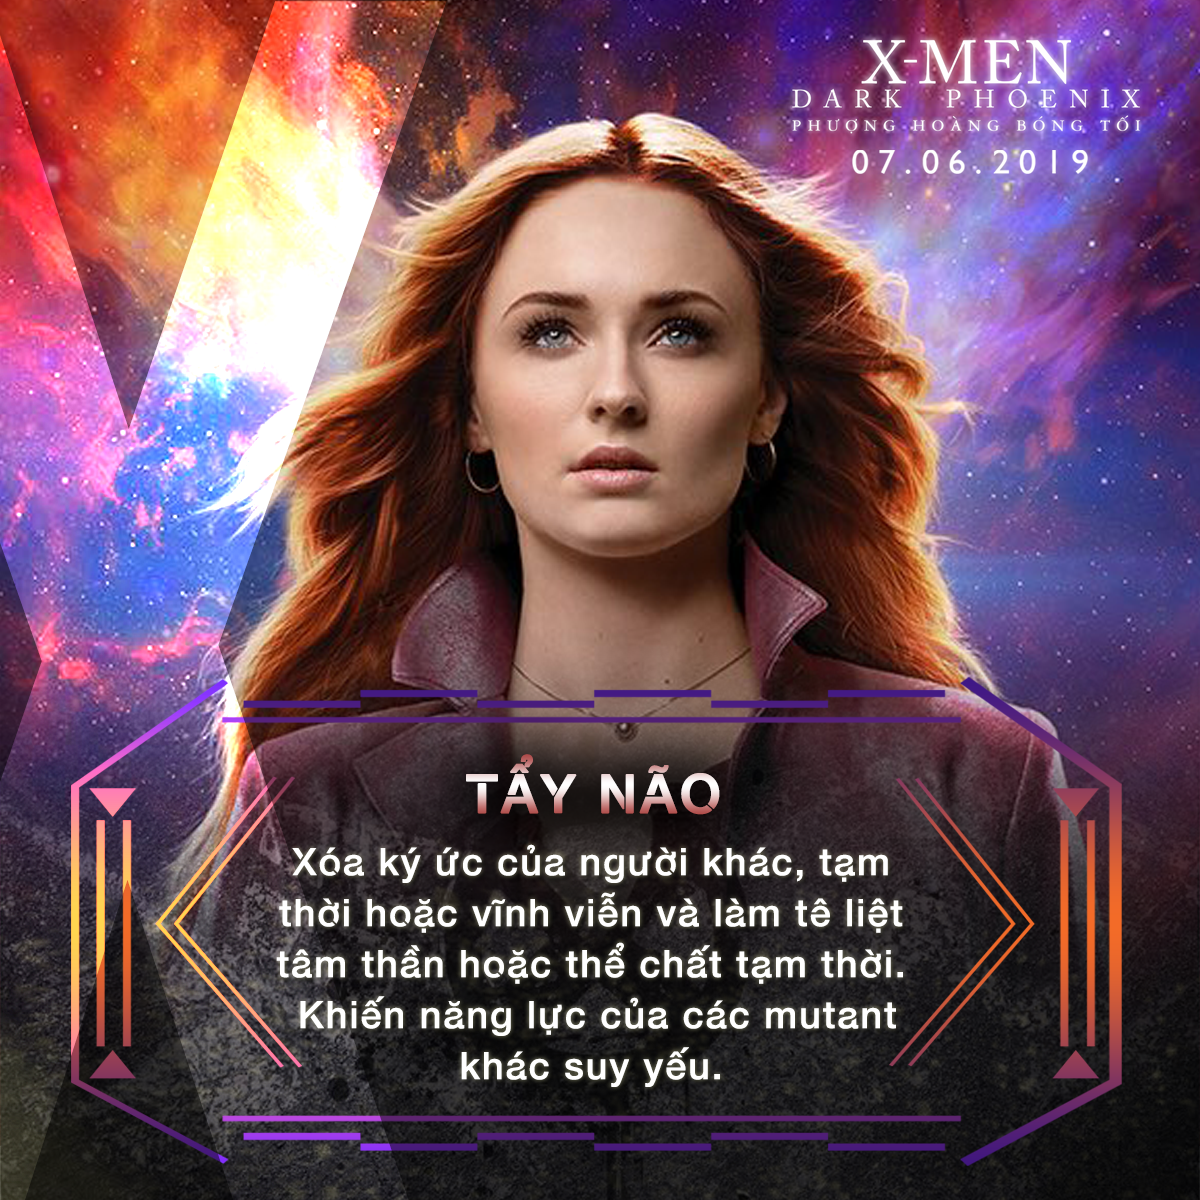 Choáng ngợp với sức mạnh bá đạo của người đẹp Jean Grey trong vũ trụ dị nhân X-Men - Ảnh 7.